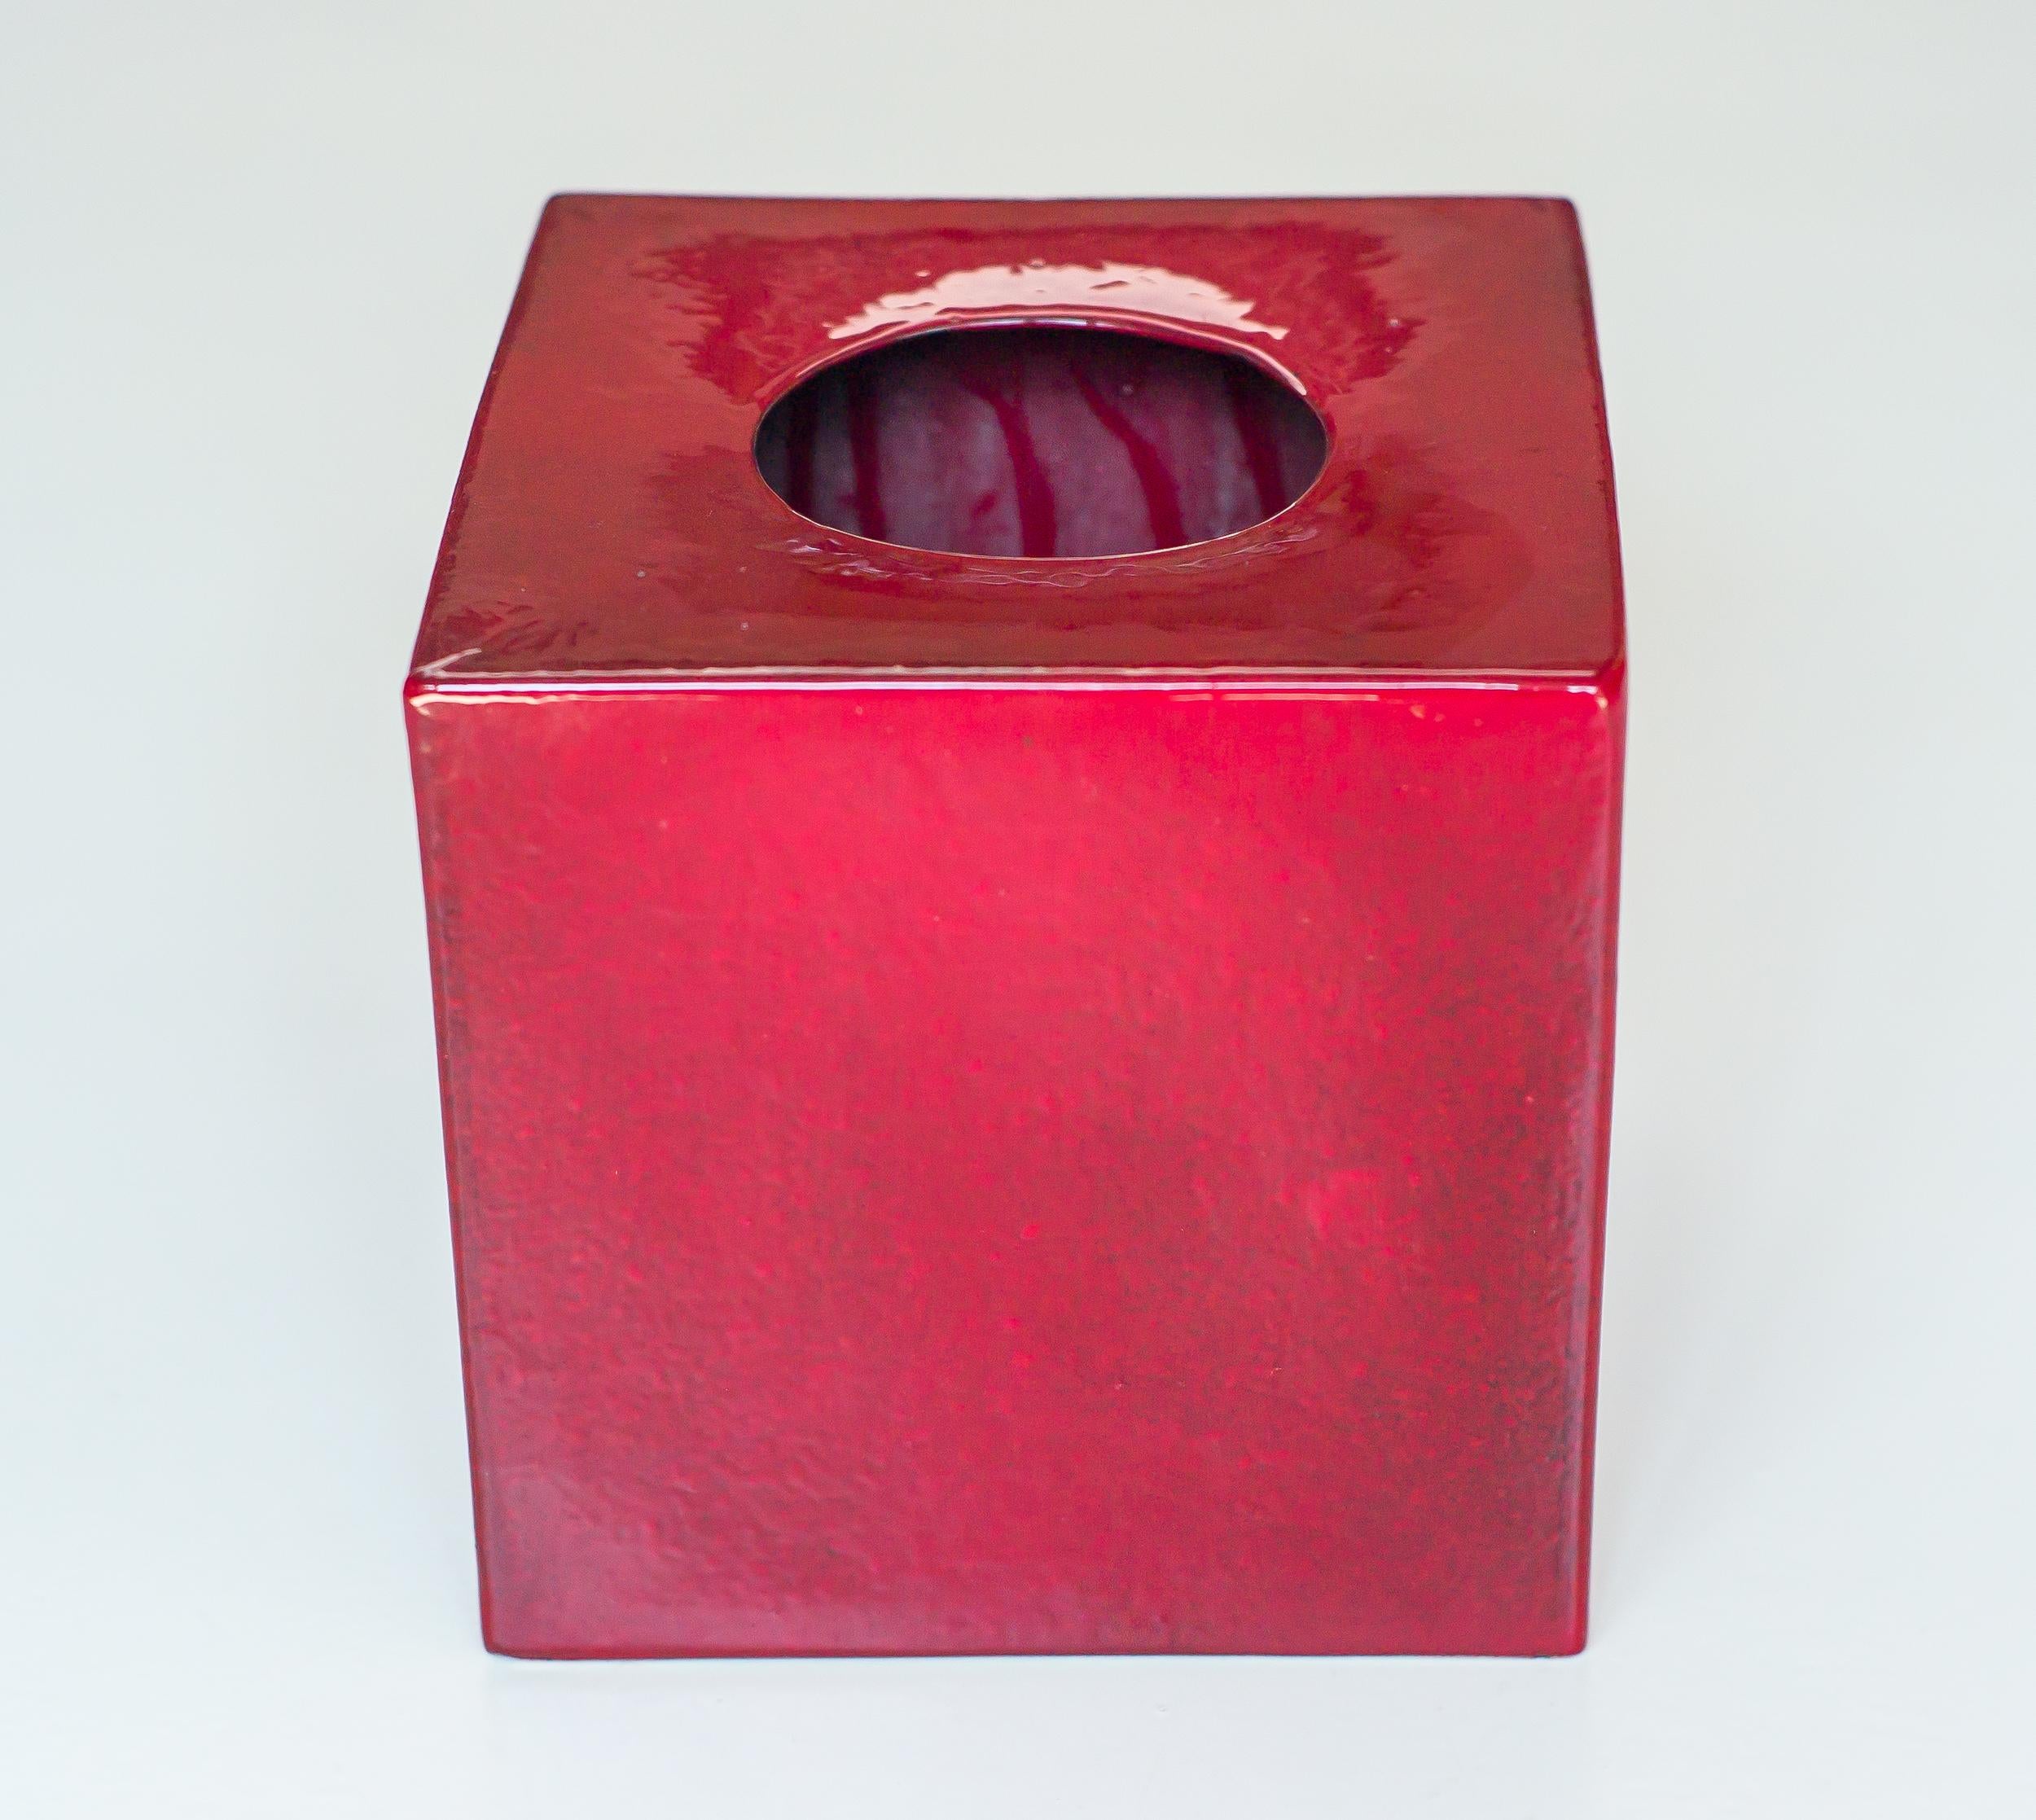 Oxblood red vase model 585 designed by Ettore Sottsass in 1960.
Realized circa 1961 by Società Ceramica Toscana di Figline for Milanese gallery Il Sestante in different colors.
Signed at the bottom.
Literature; Ferrari Fulvio, Sottsass: Tutta la